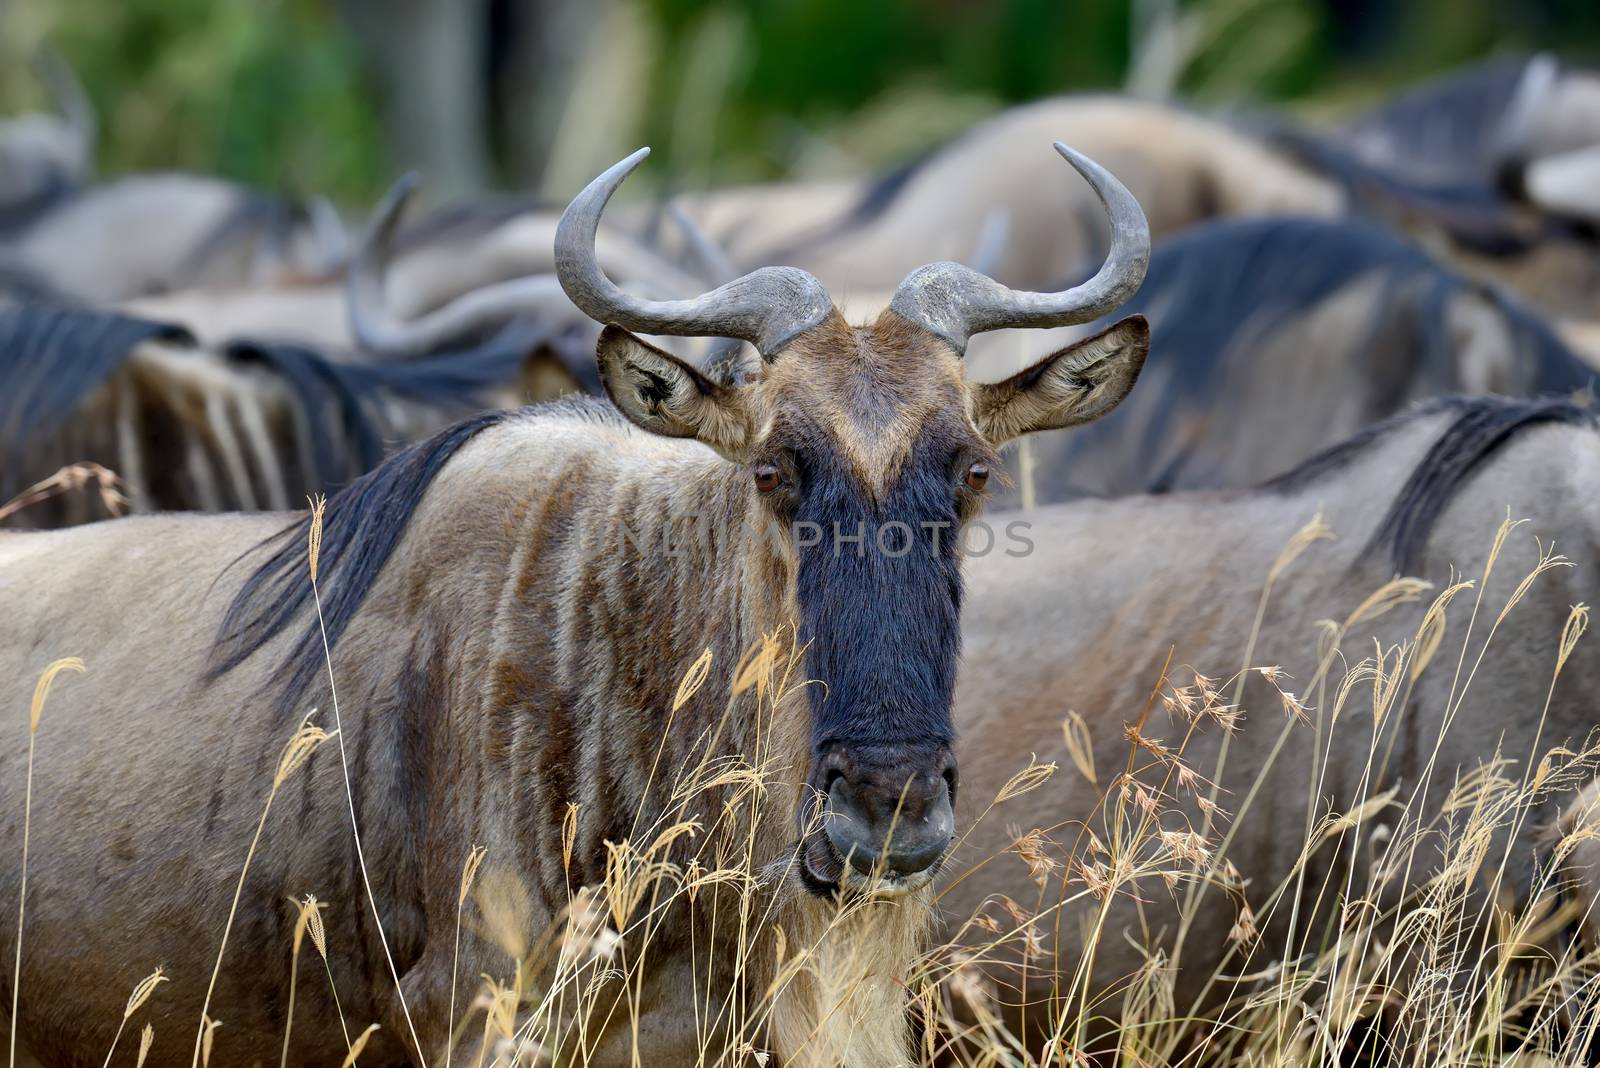 Wildebeest in savannah, National park of Kenya, Africa